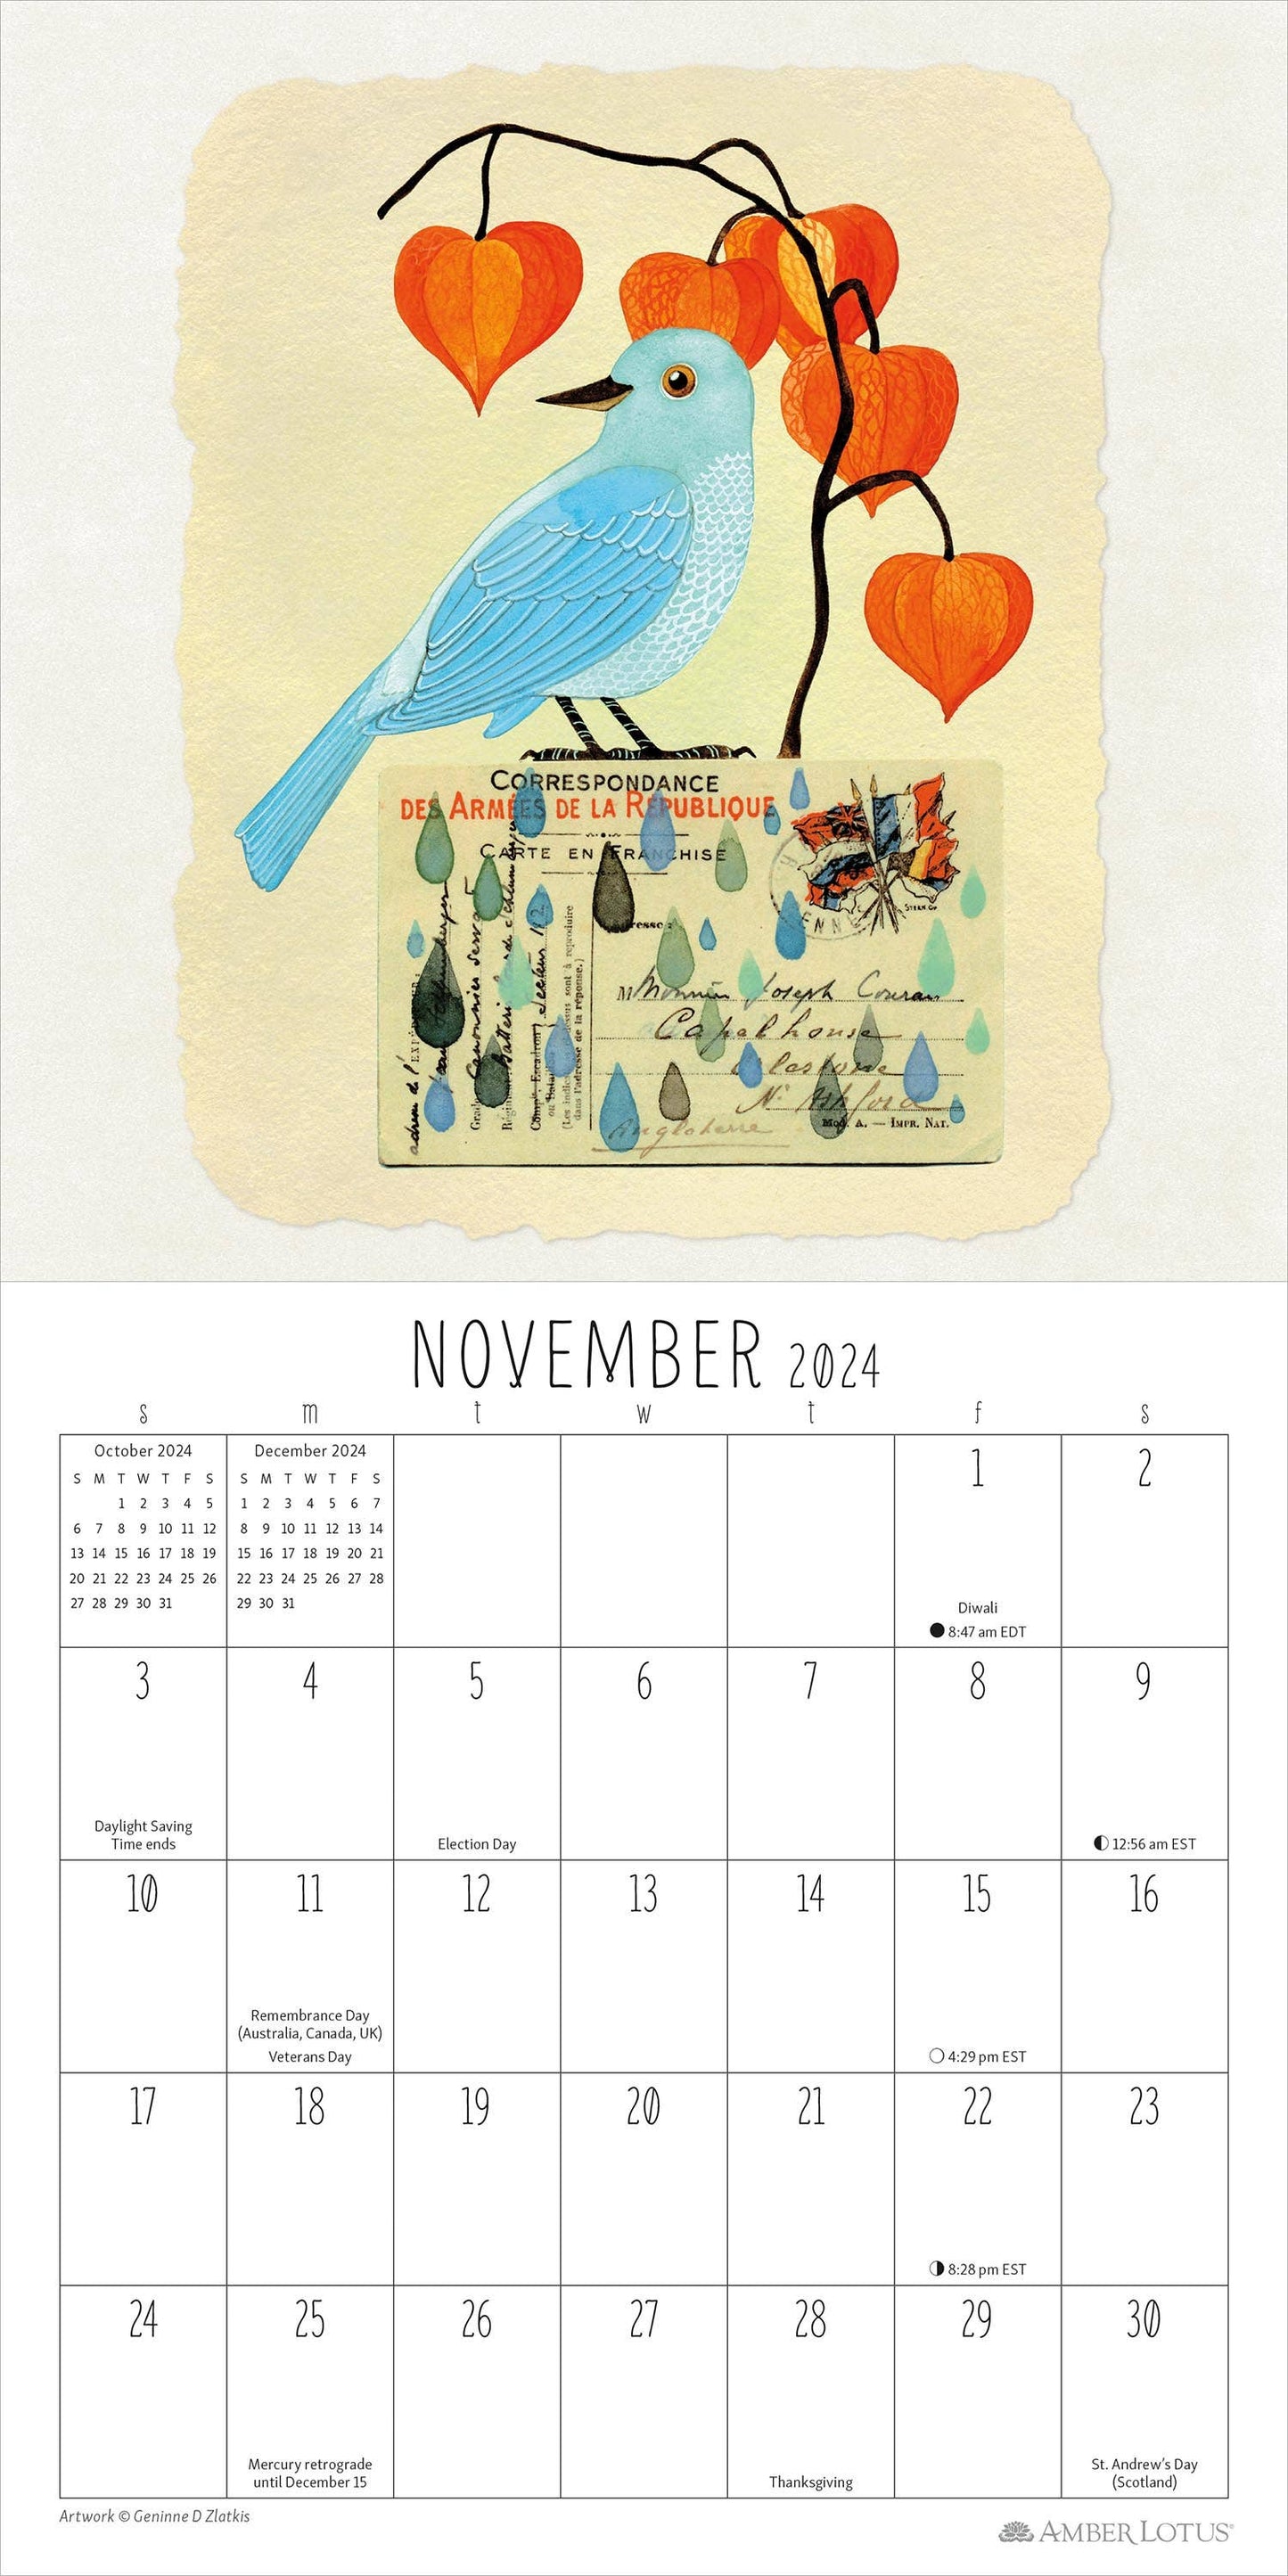 Feathered Friends 2024 Mini Wall Calendar by Geninne Zlatkis